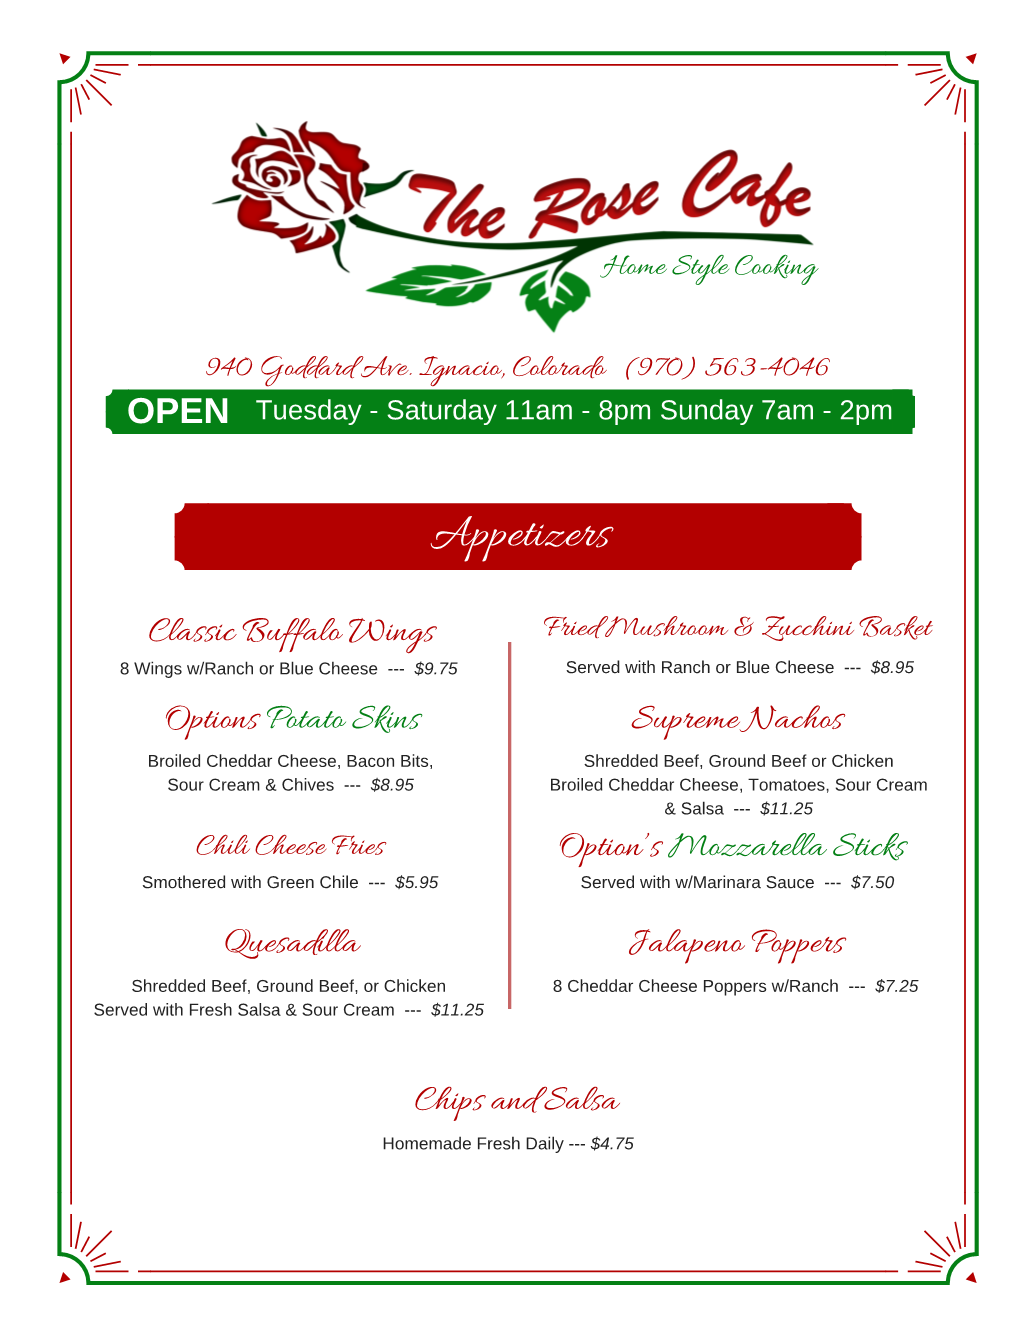 The Rose Cafe Menu